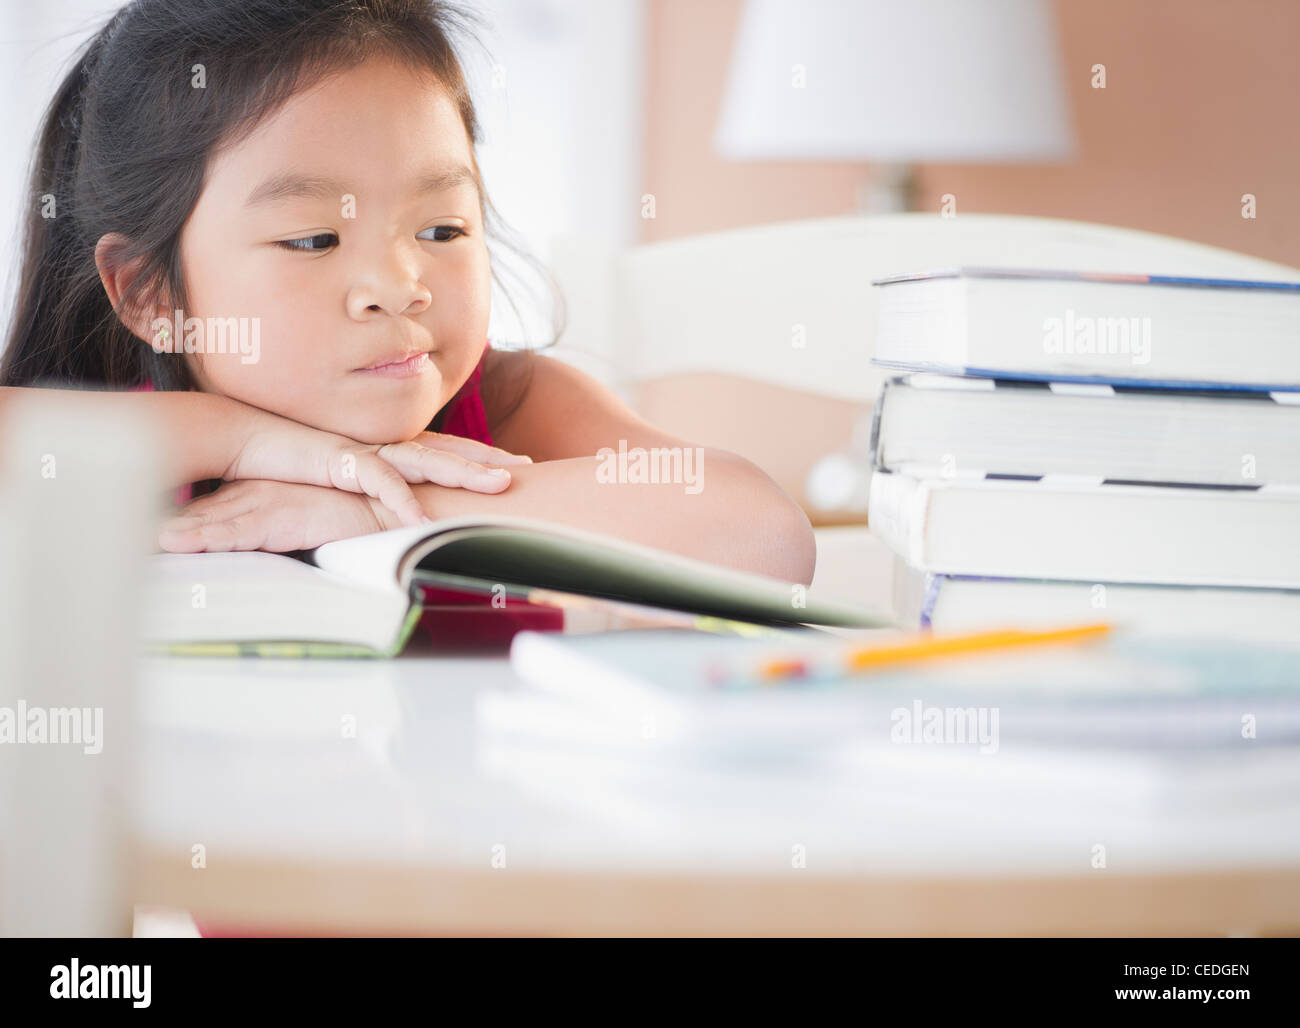 Bored Korean girl doing homework Stock Photo